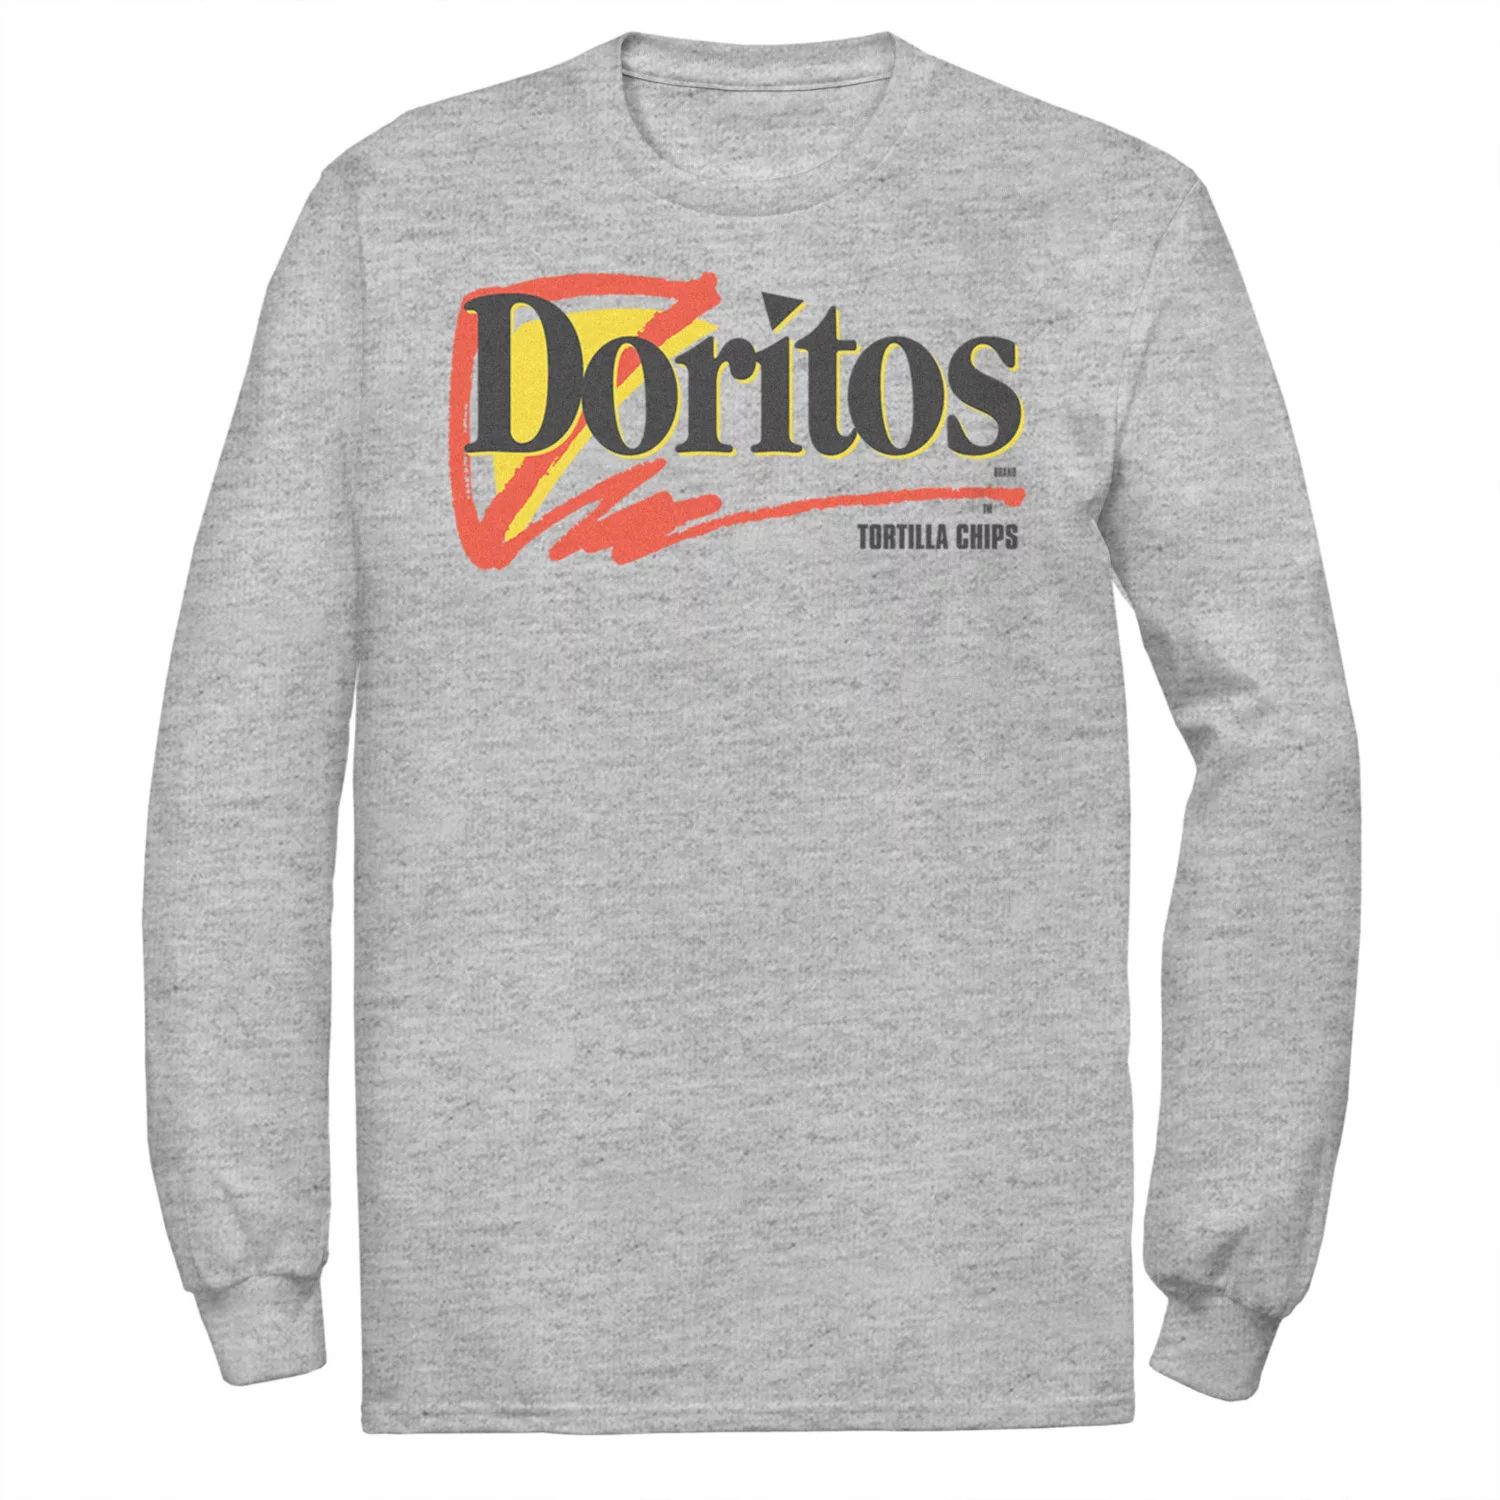 Мужская футболка с логотипом Doritos Tortilla Chips Licensed Character мужская футболка с логотипом doritos tortilla chips licensed character